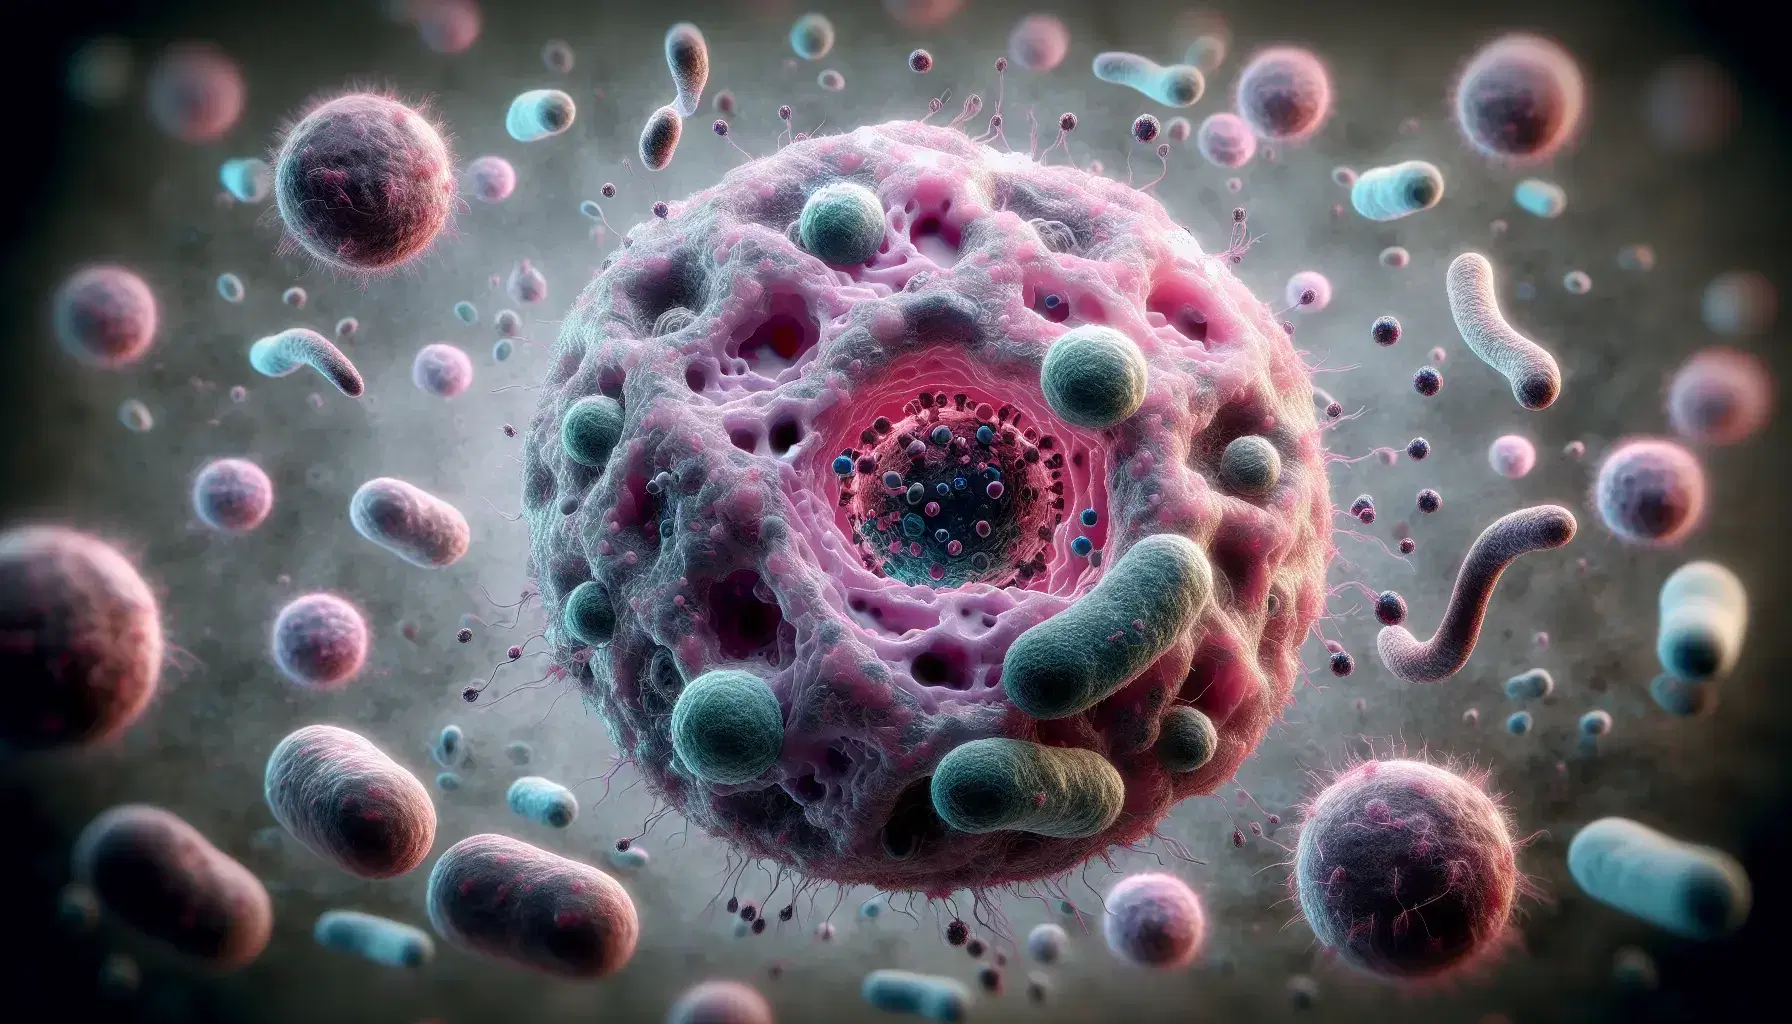 Vista microscópica de células humanas con un macrófago central en tonos rosas y morados rodeado de esferas y óvalos que simulan patógenos en azules y verdes, con células menores interactuando.